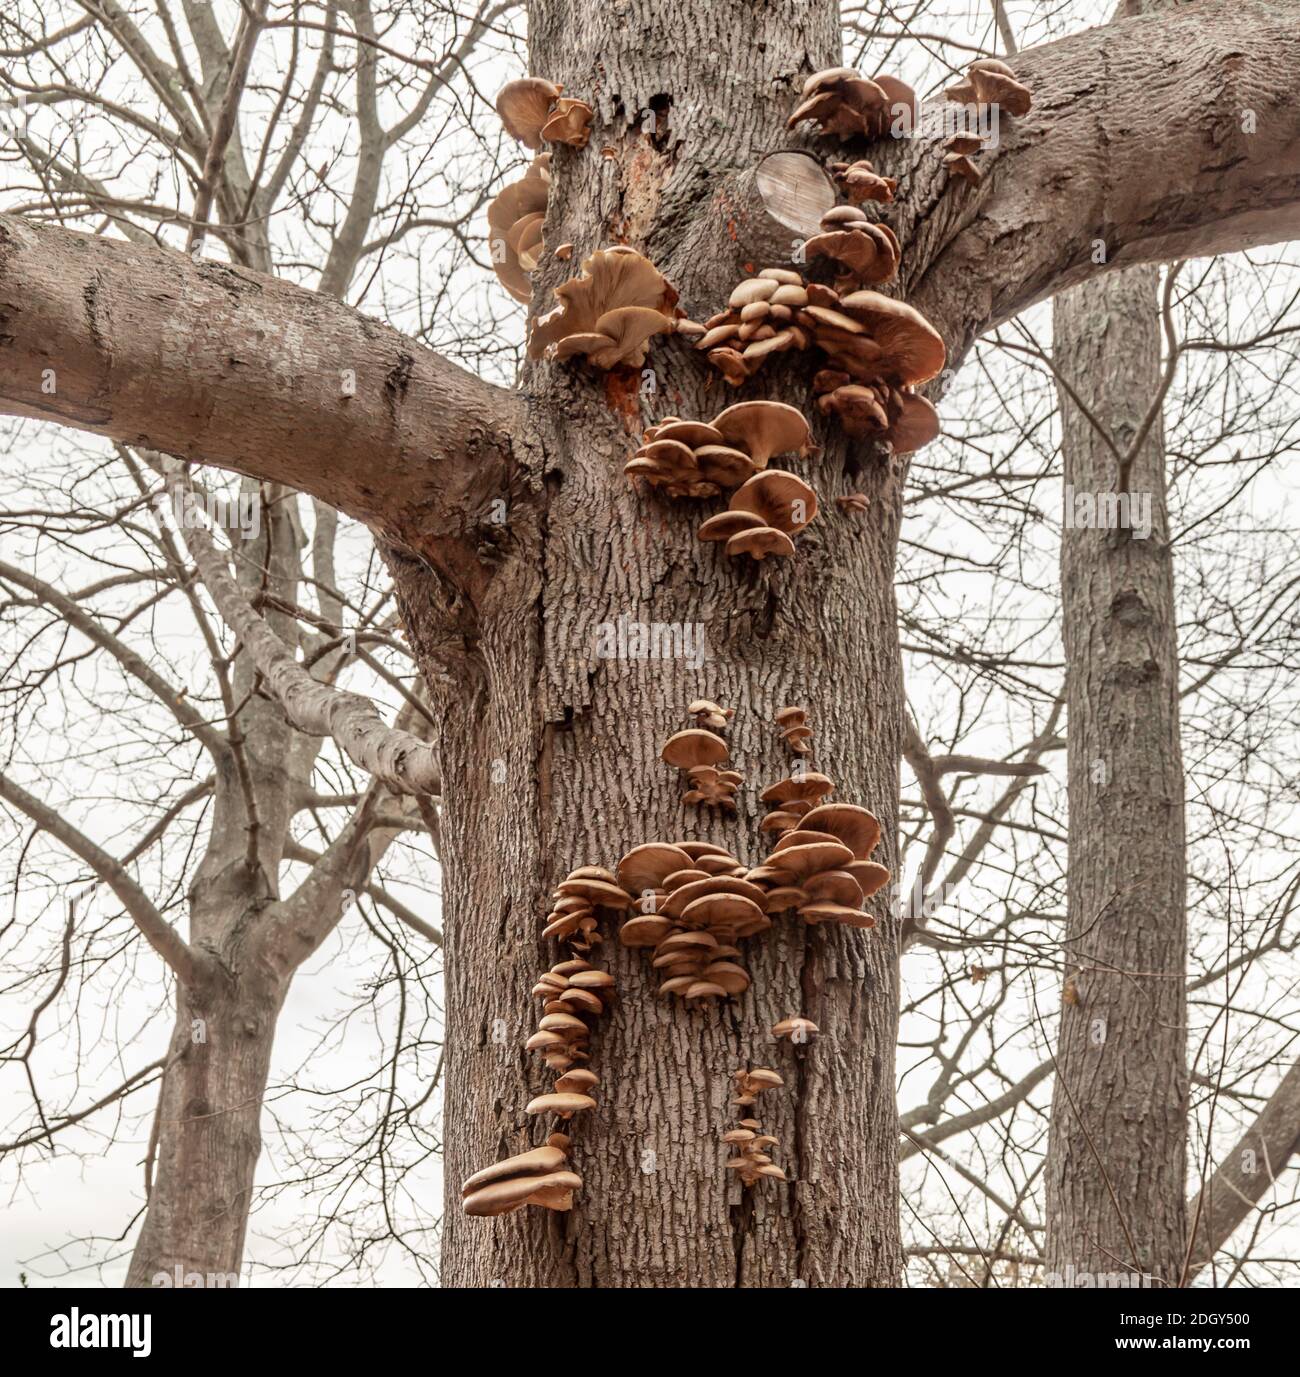 Many fungi on the trunk of a tree in easten long island, NY Stock Photo